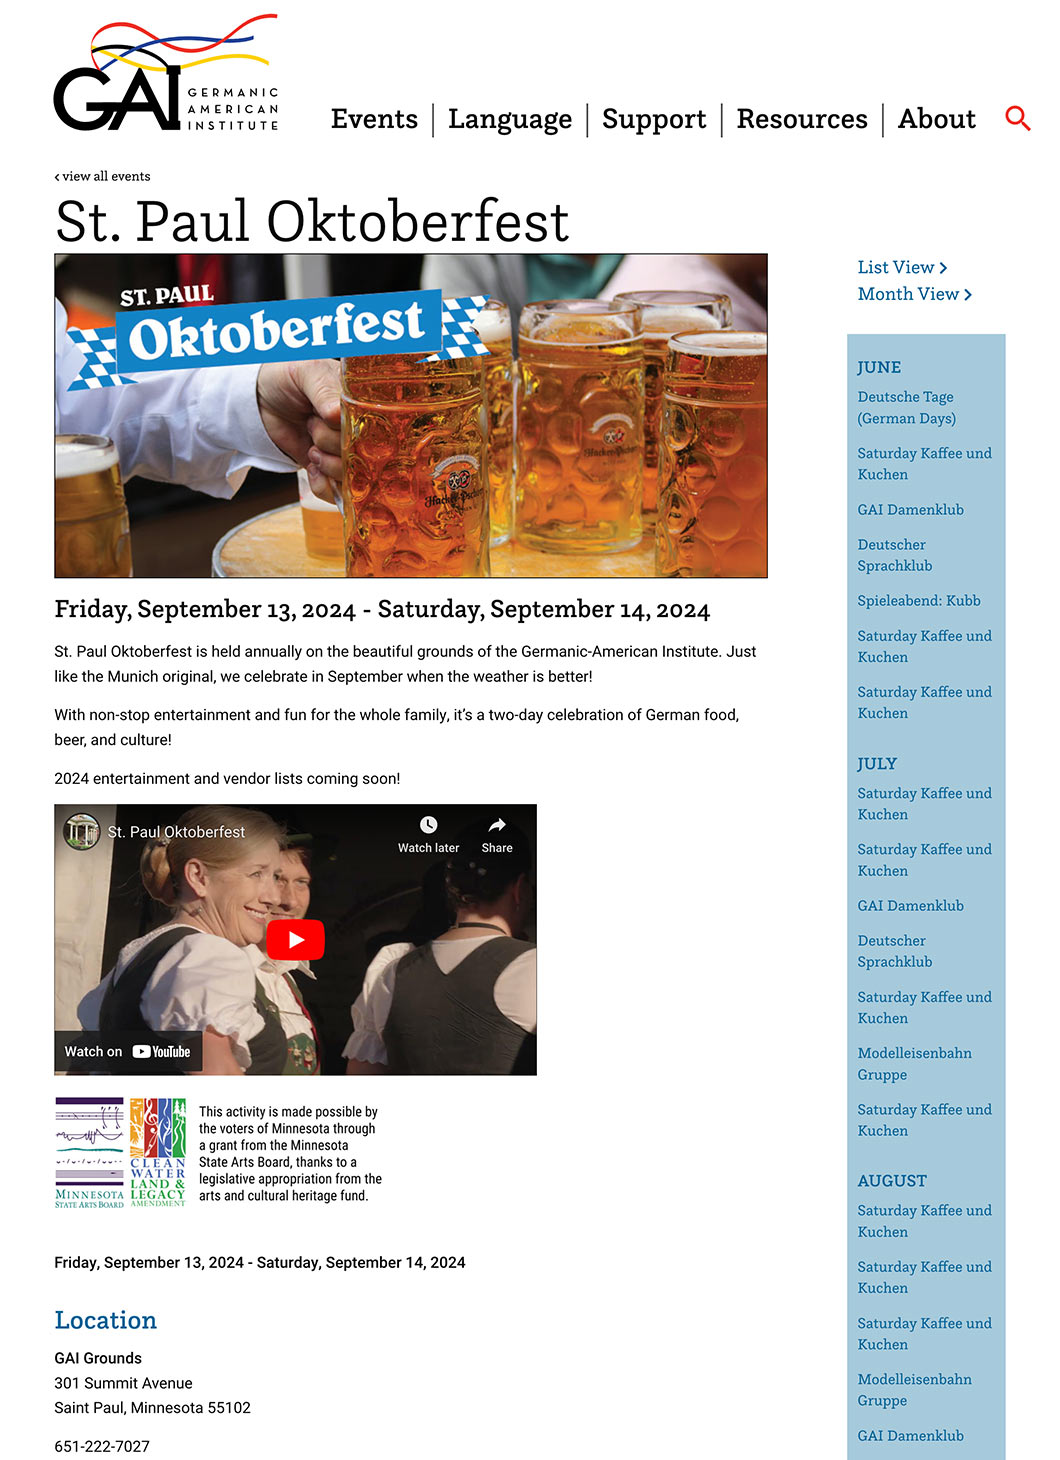 Germanic-American Institute - St. Paul Oktoberfest